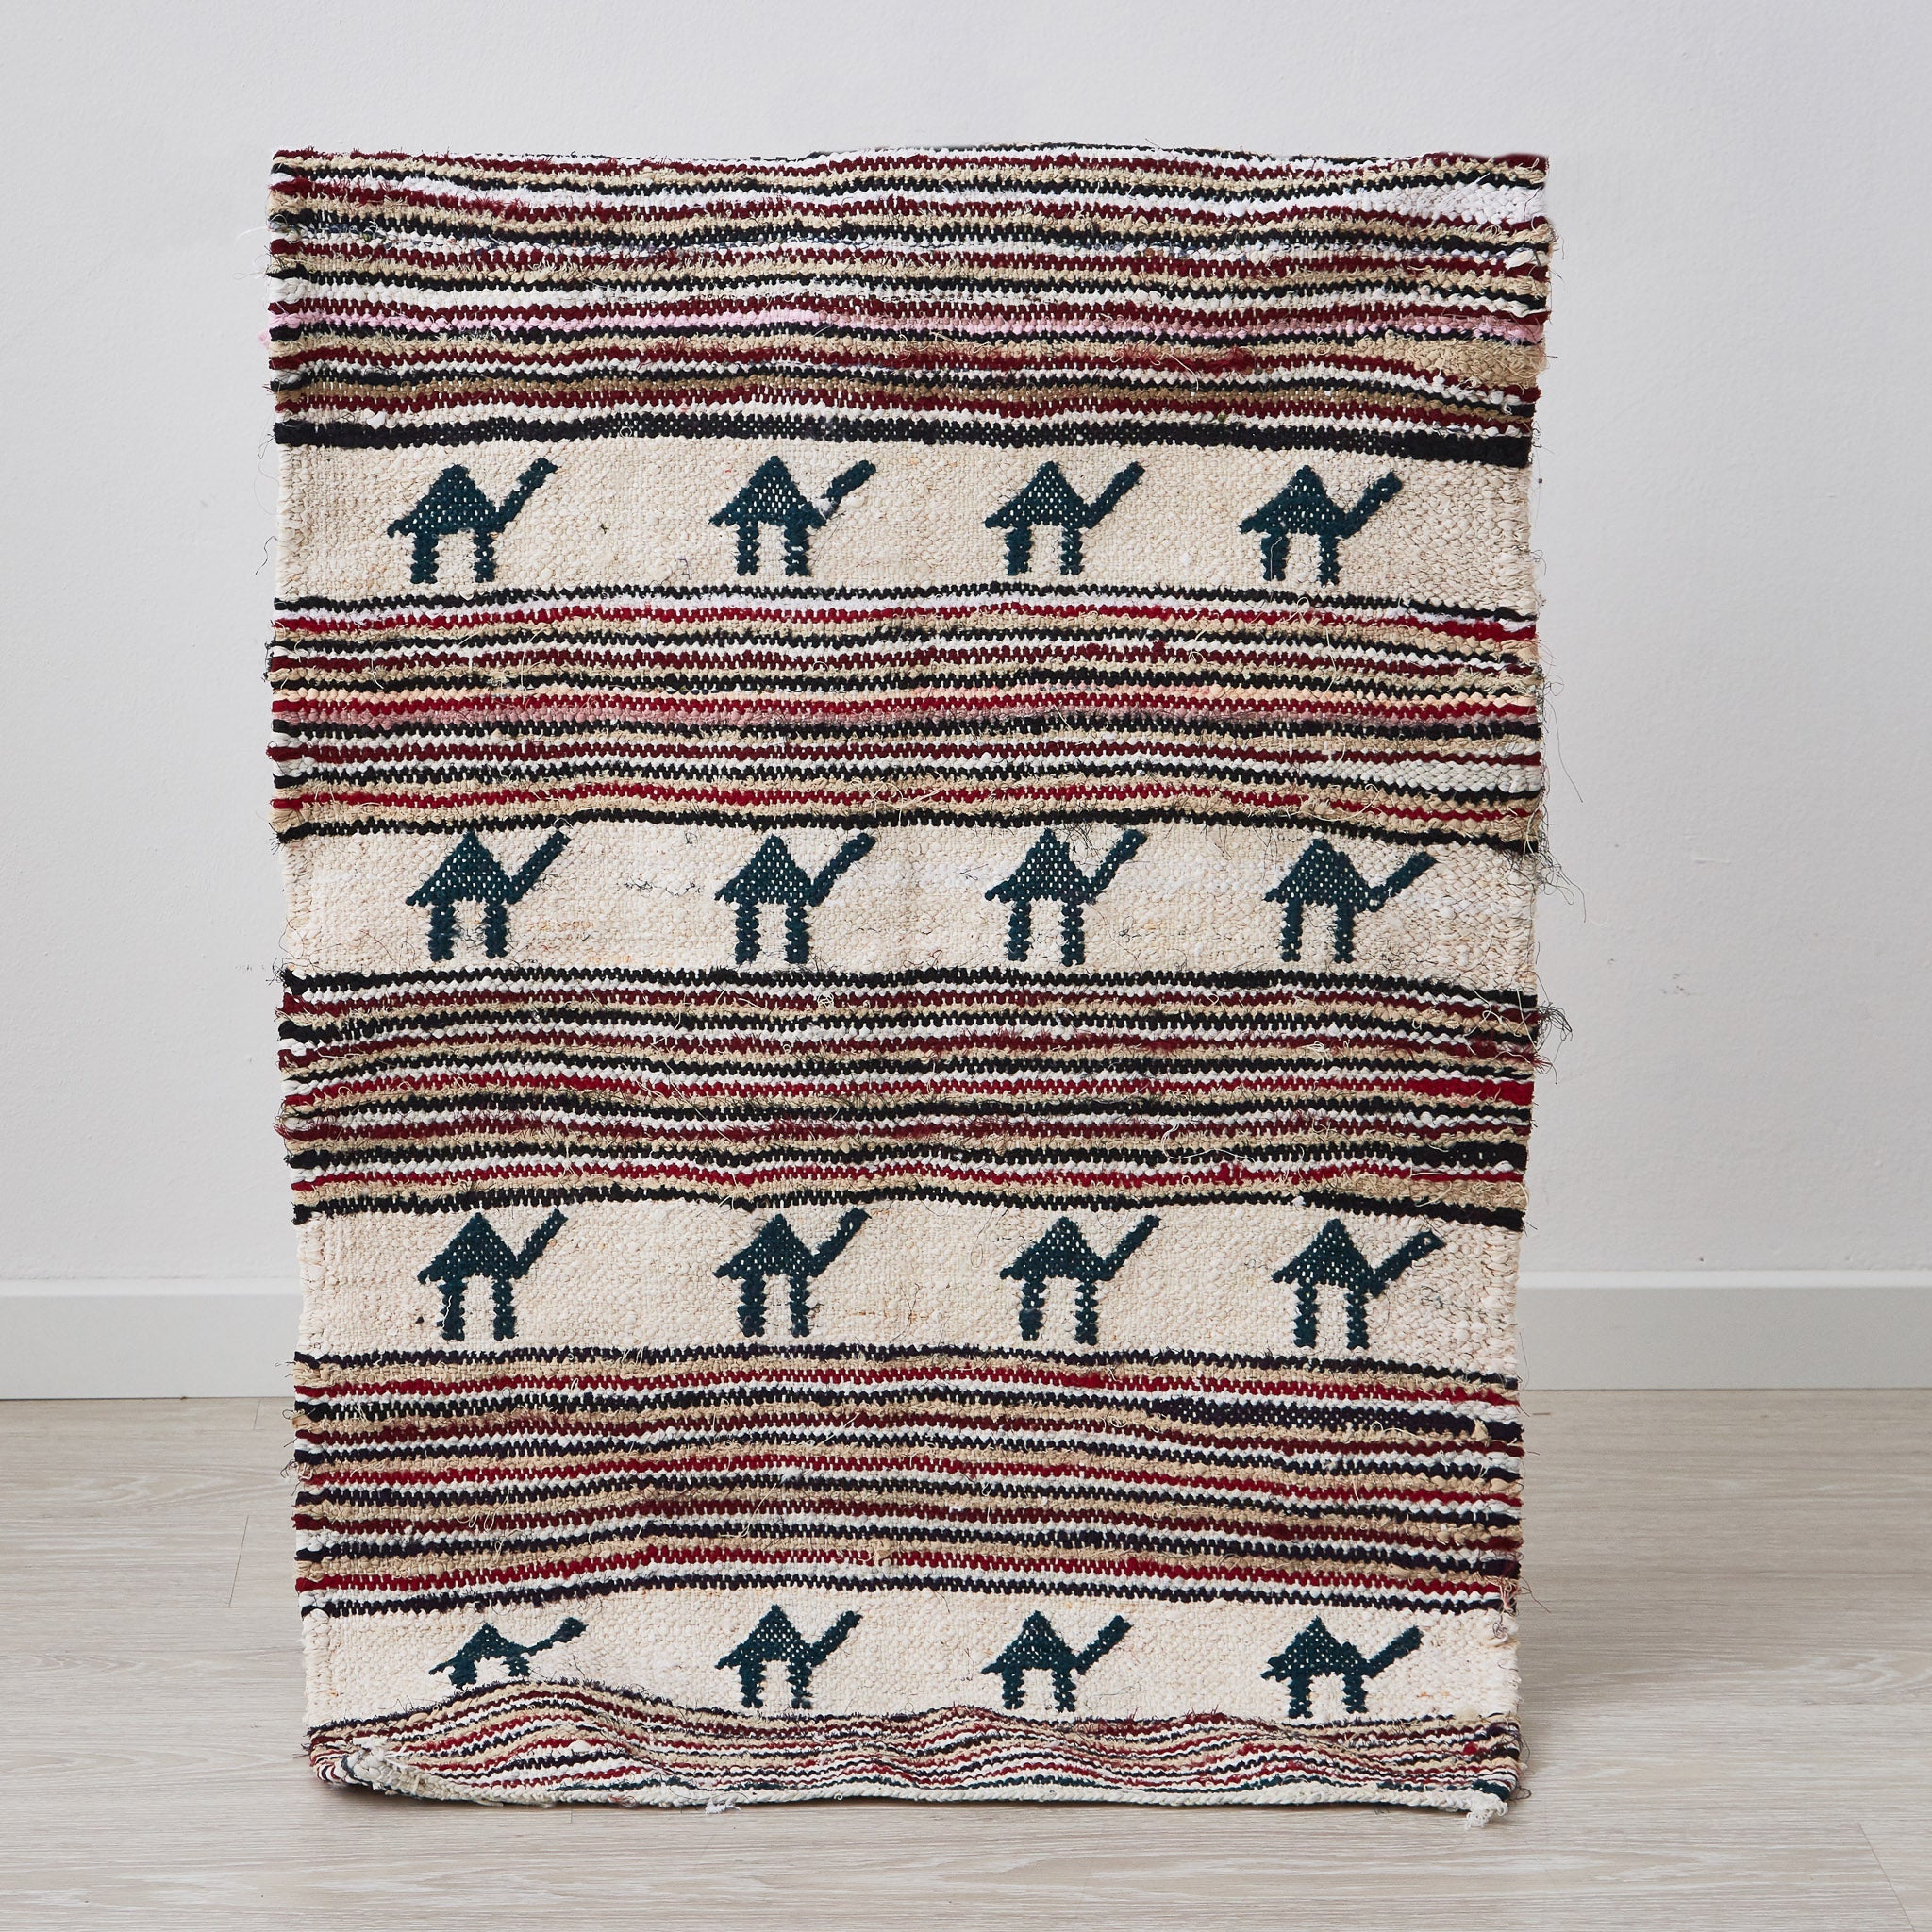 tappeto boucherouite per cameretta a tessitura piatta con cammelli scuri in posizione verticale